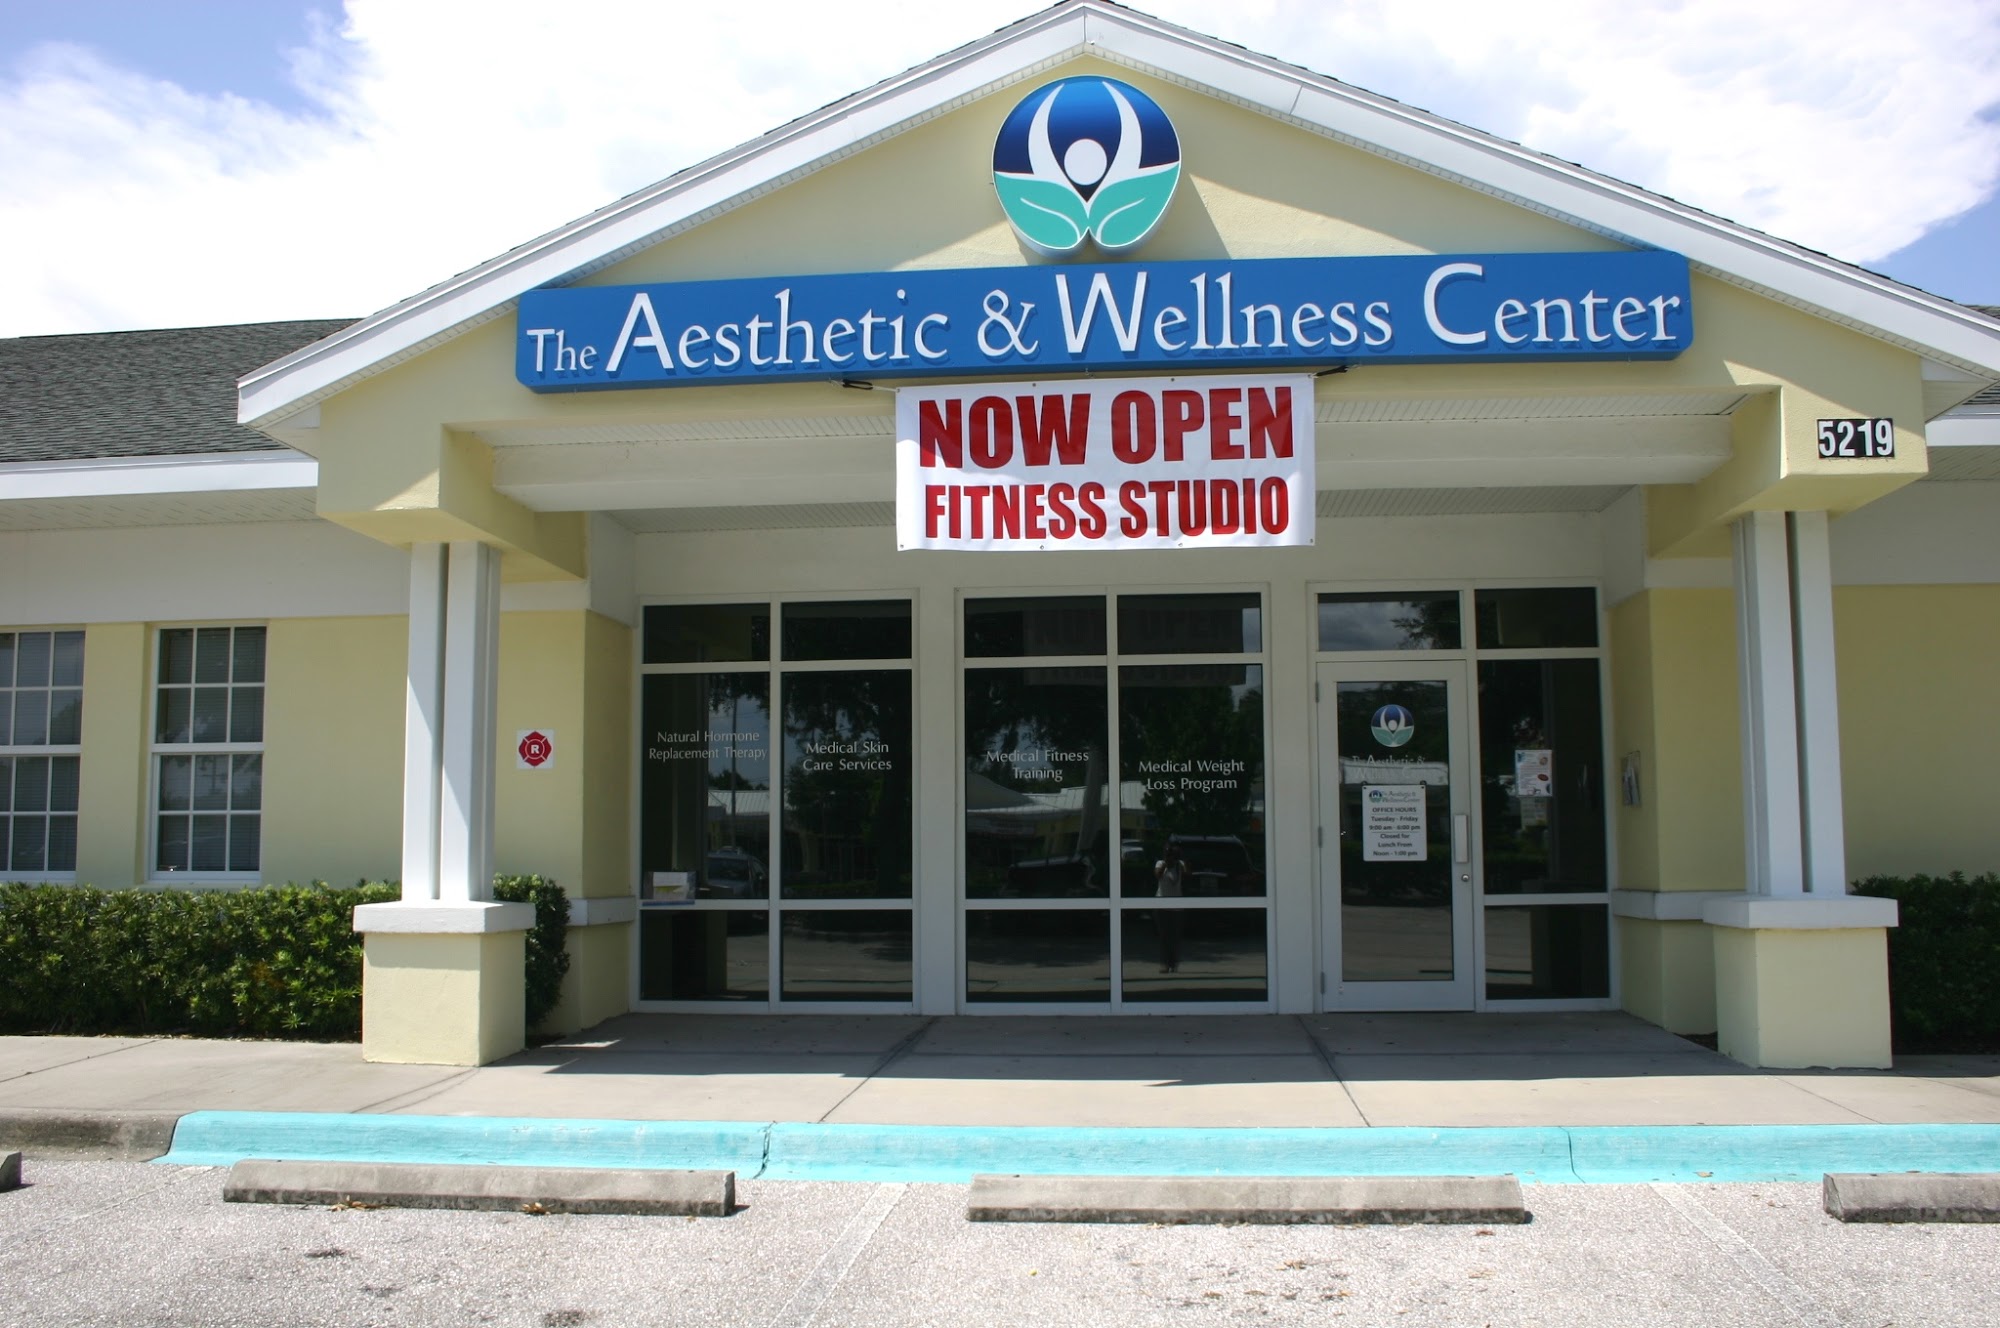 The Aesthetic & Wellness Center